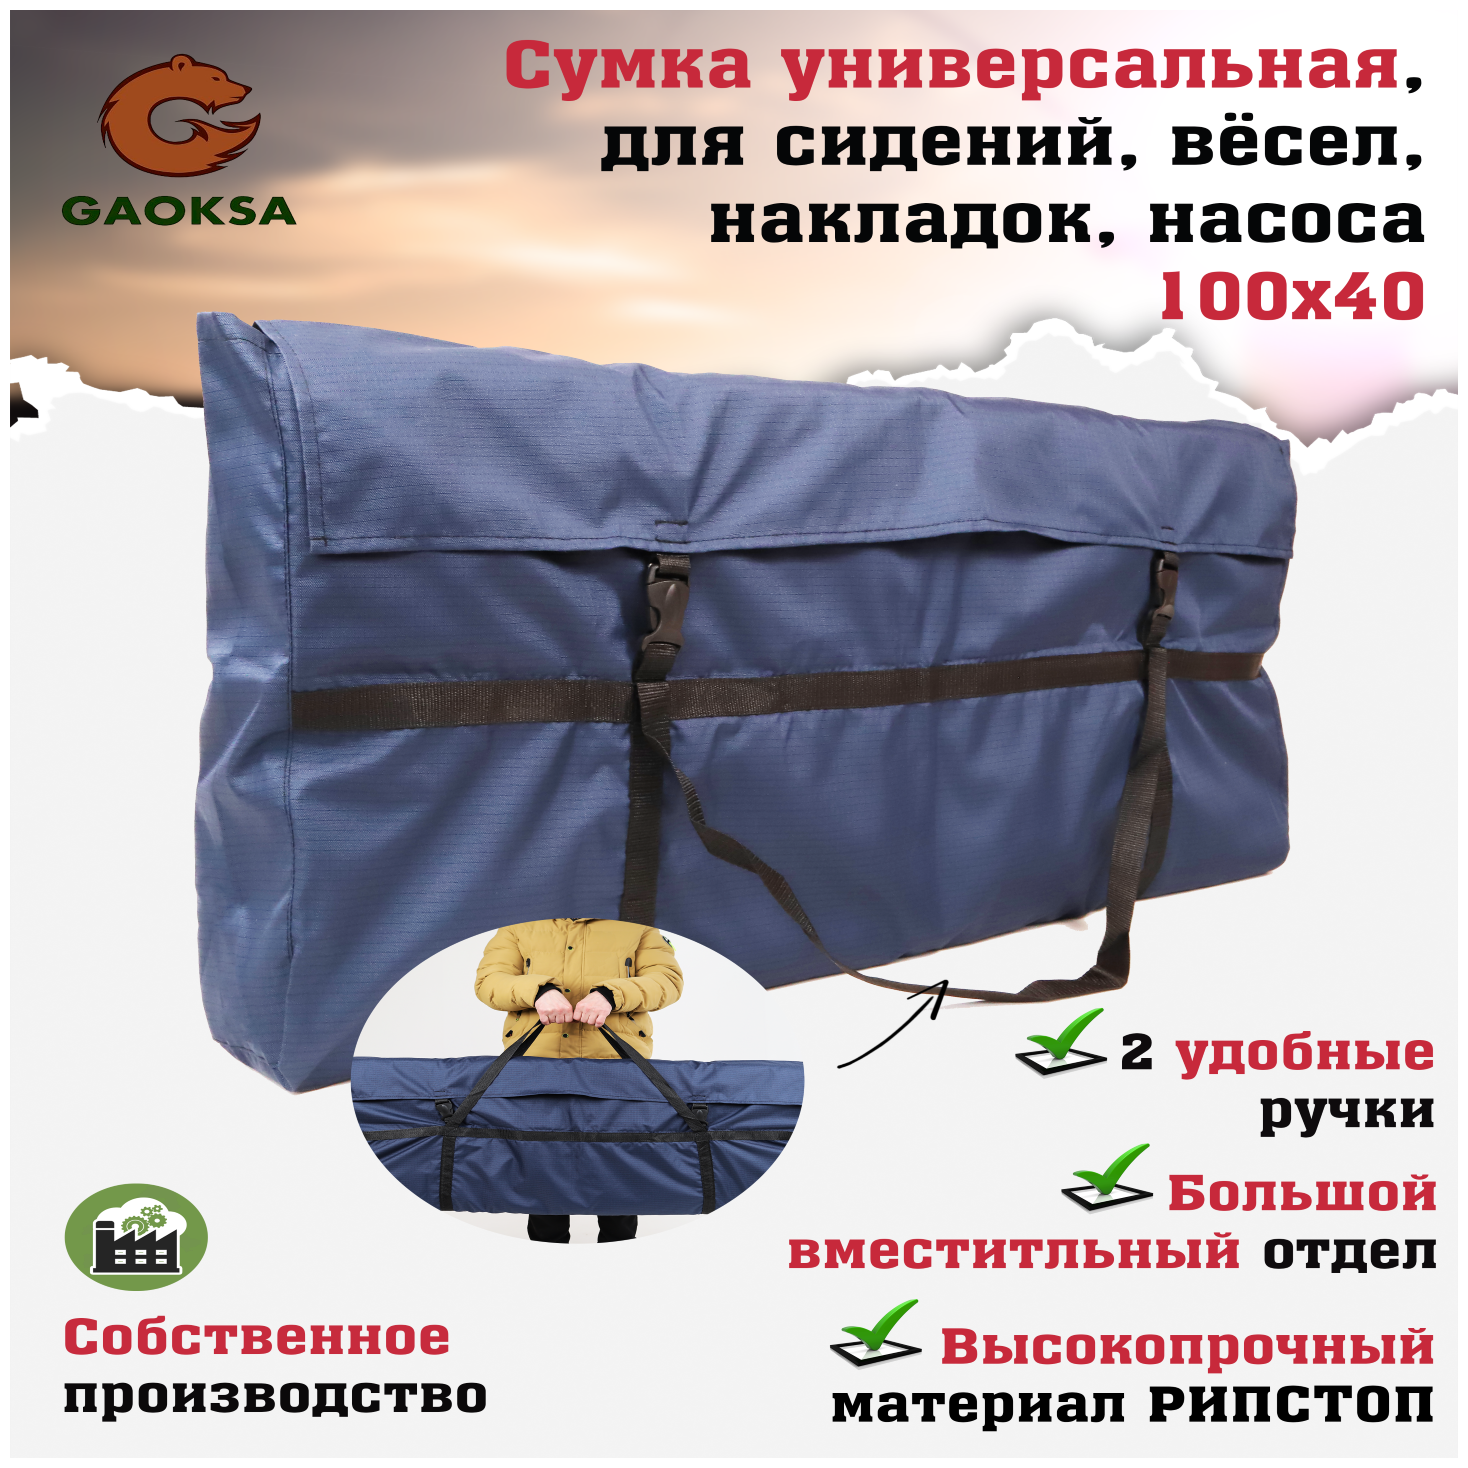 Большая универсальная сумка синяя для рыбалки (для сидений, весел, накладок, насоса, снастей, инструментов) GAOKSA, баул походный 100х40